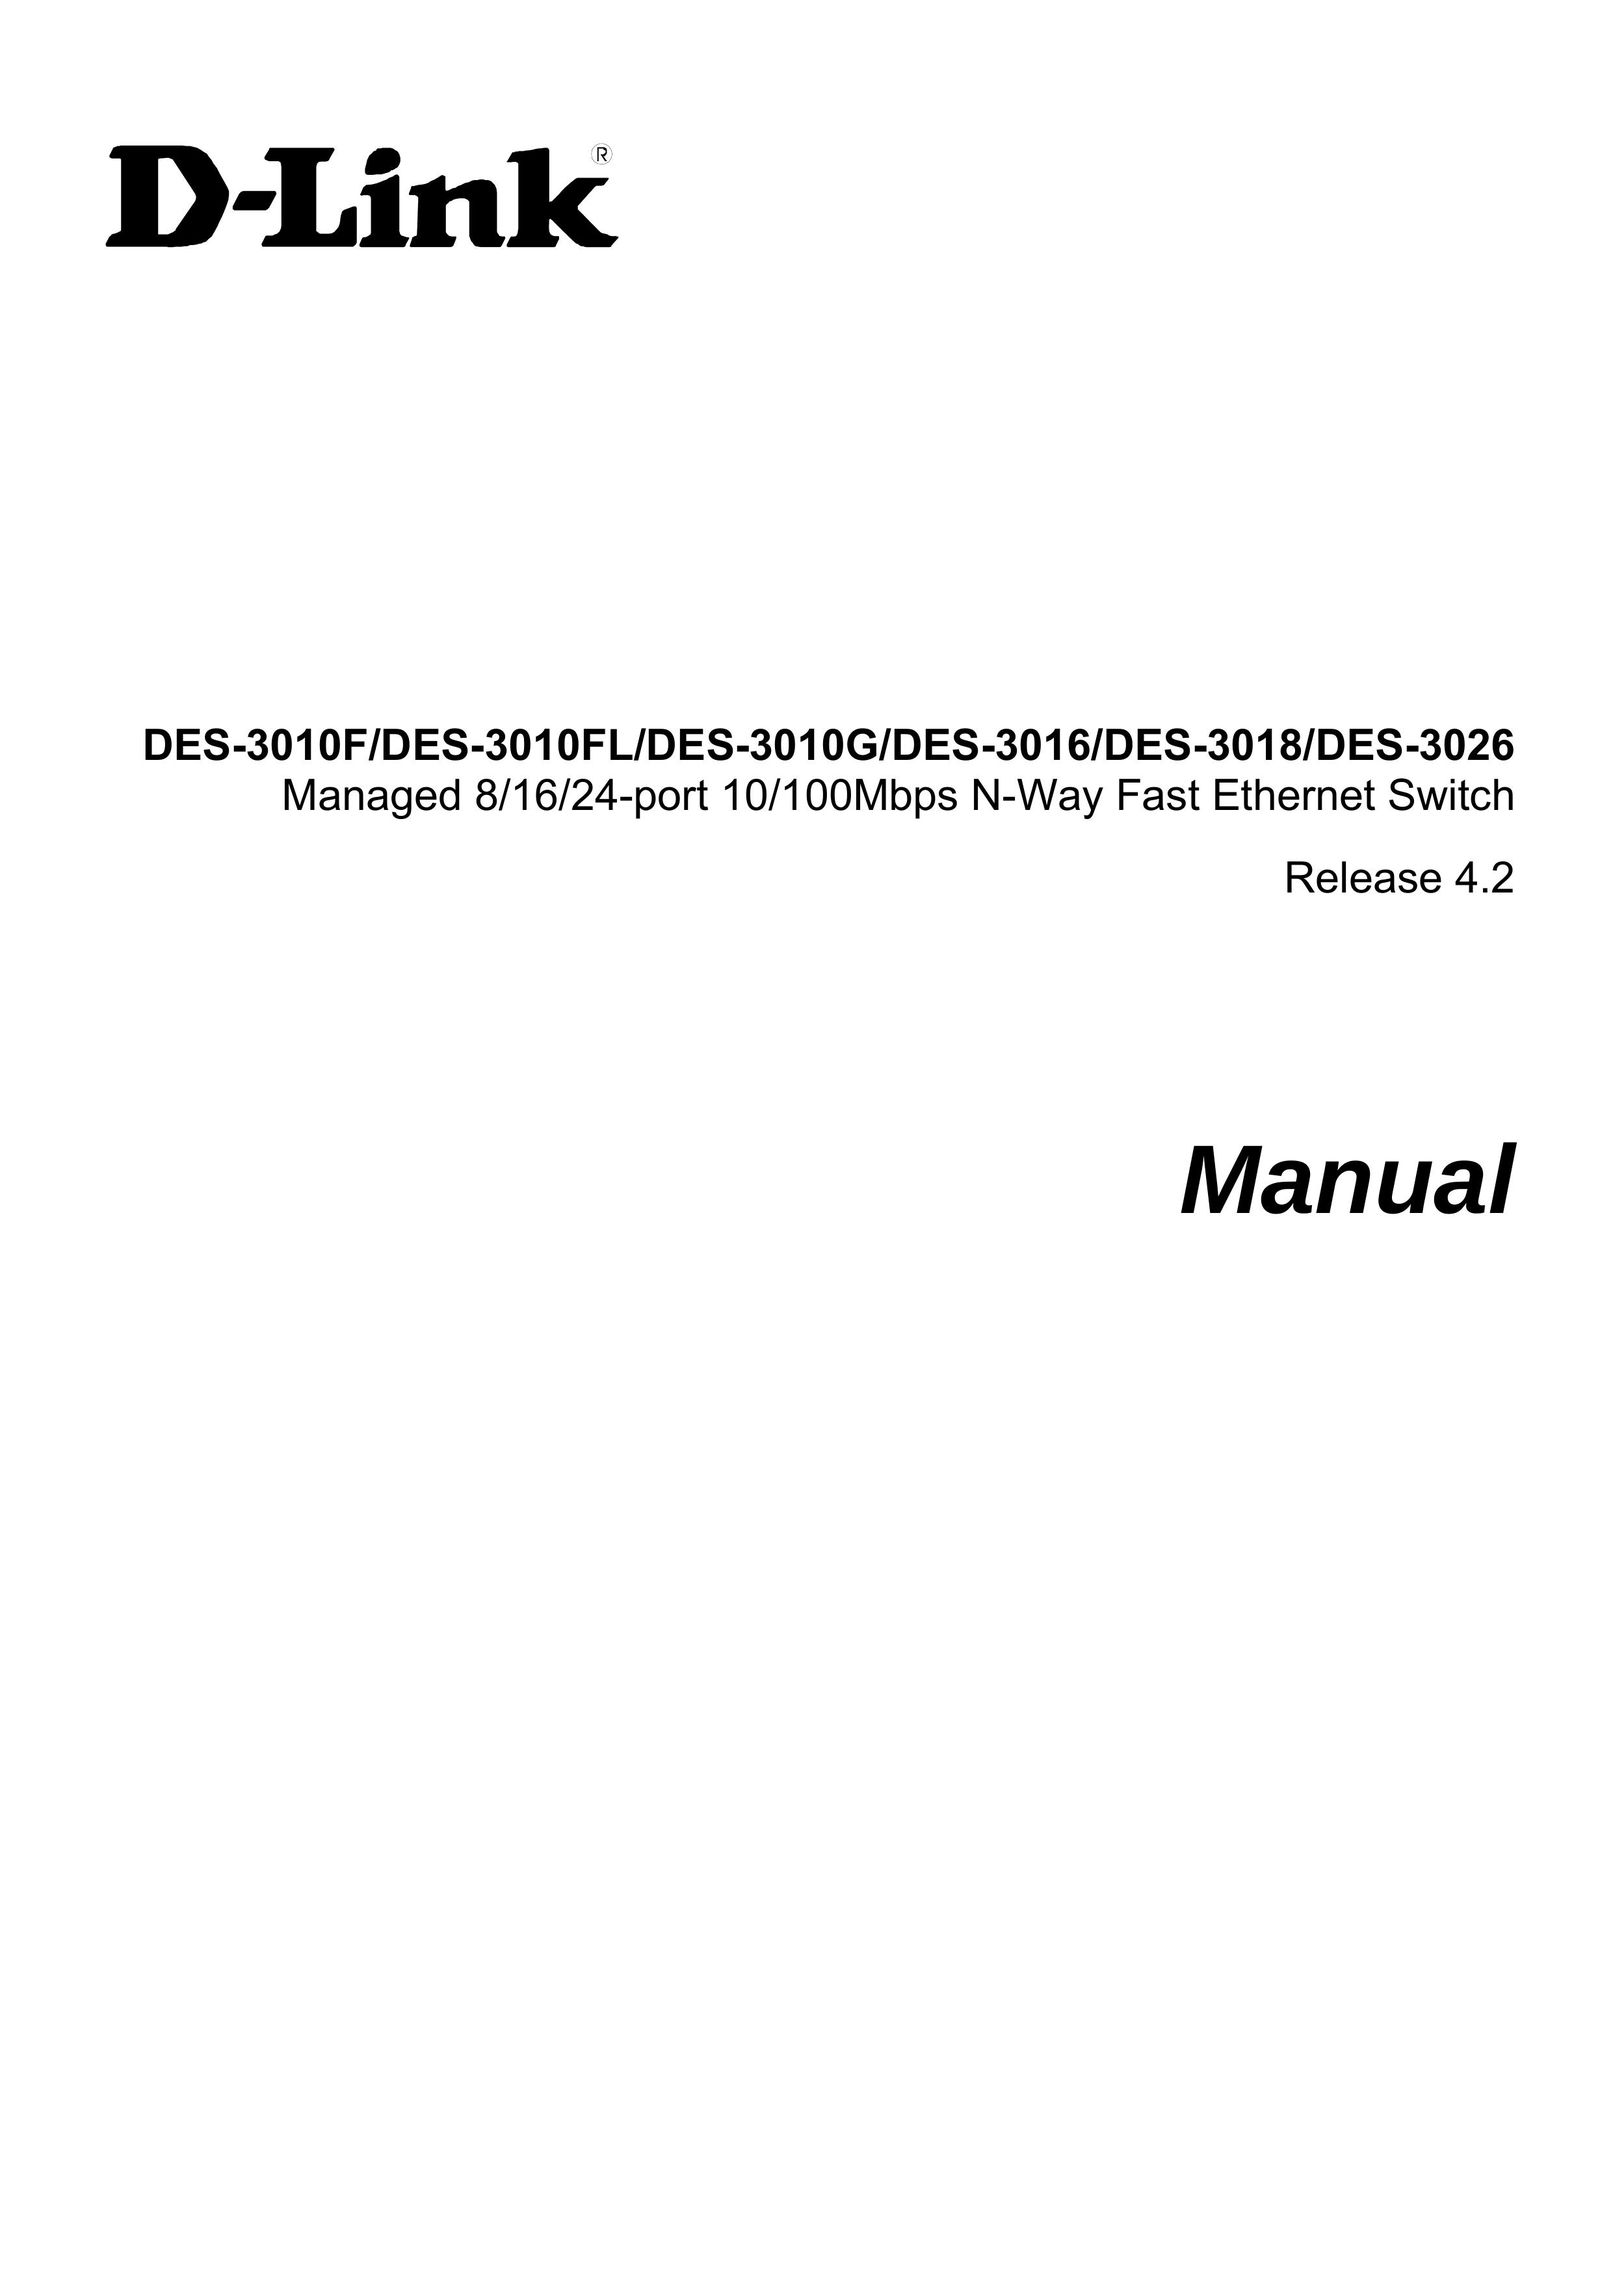 D-Link DES-3018 Switch User Manual